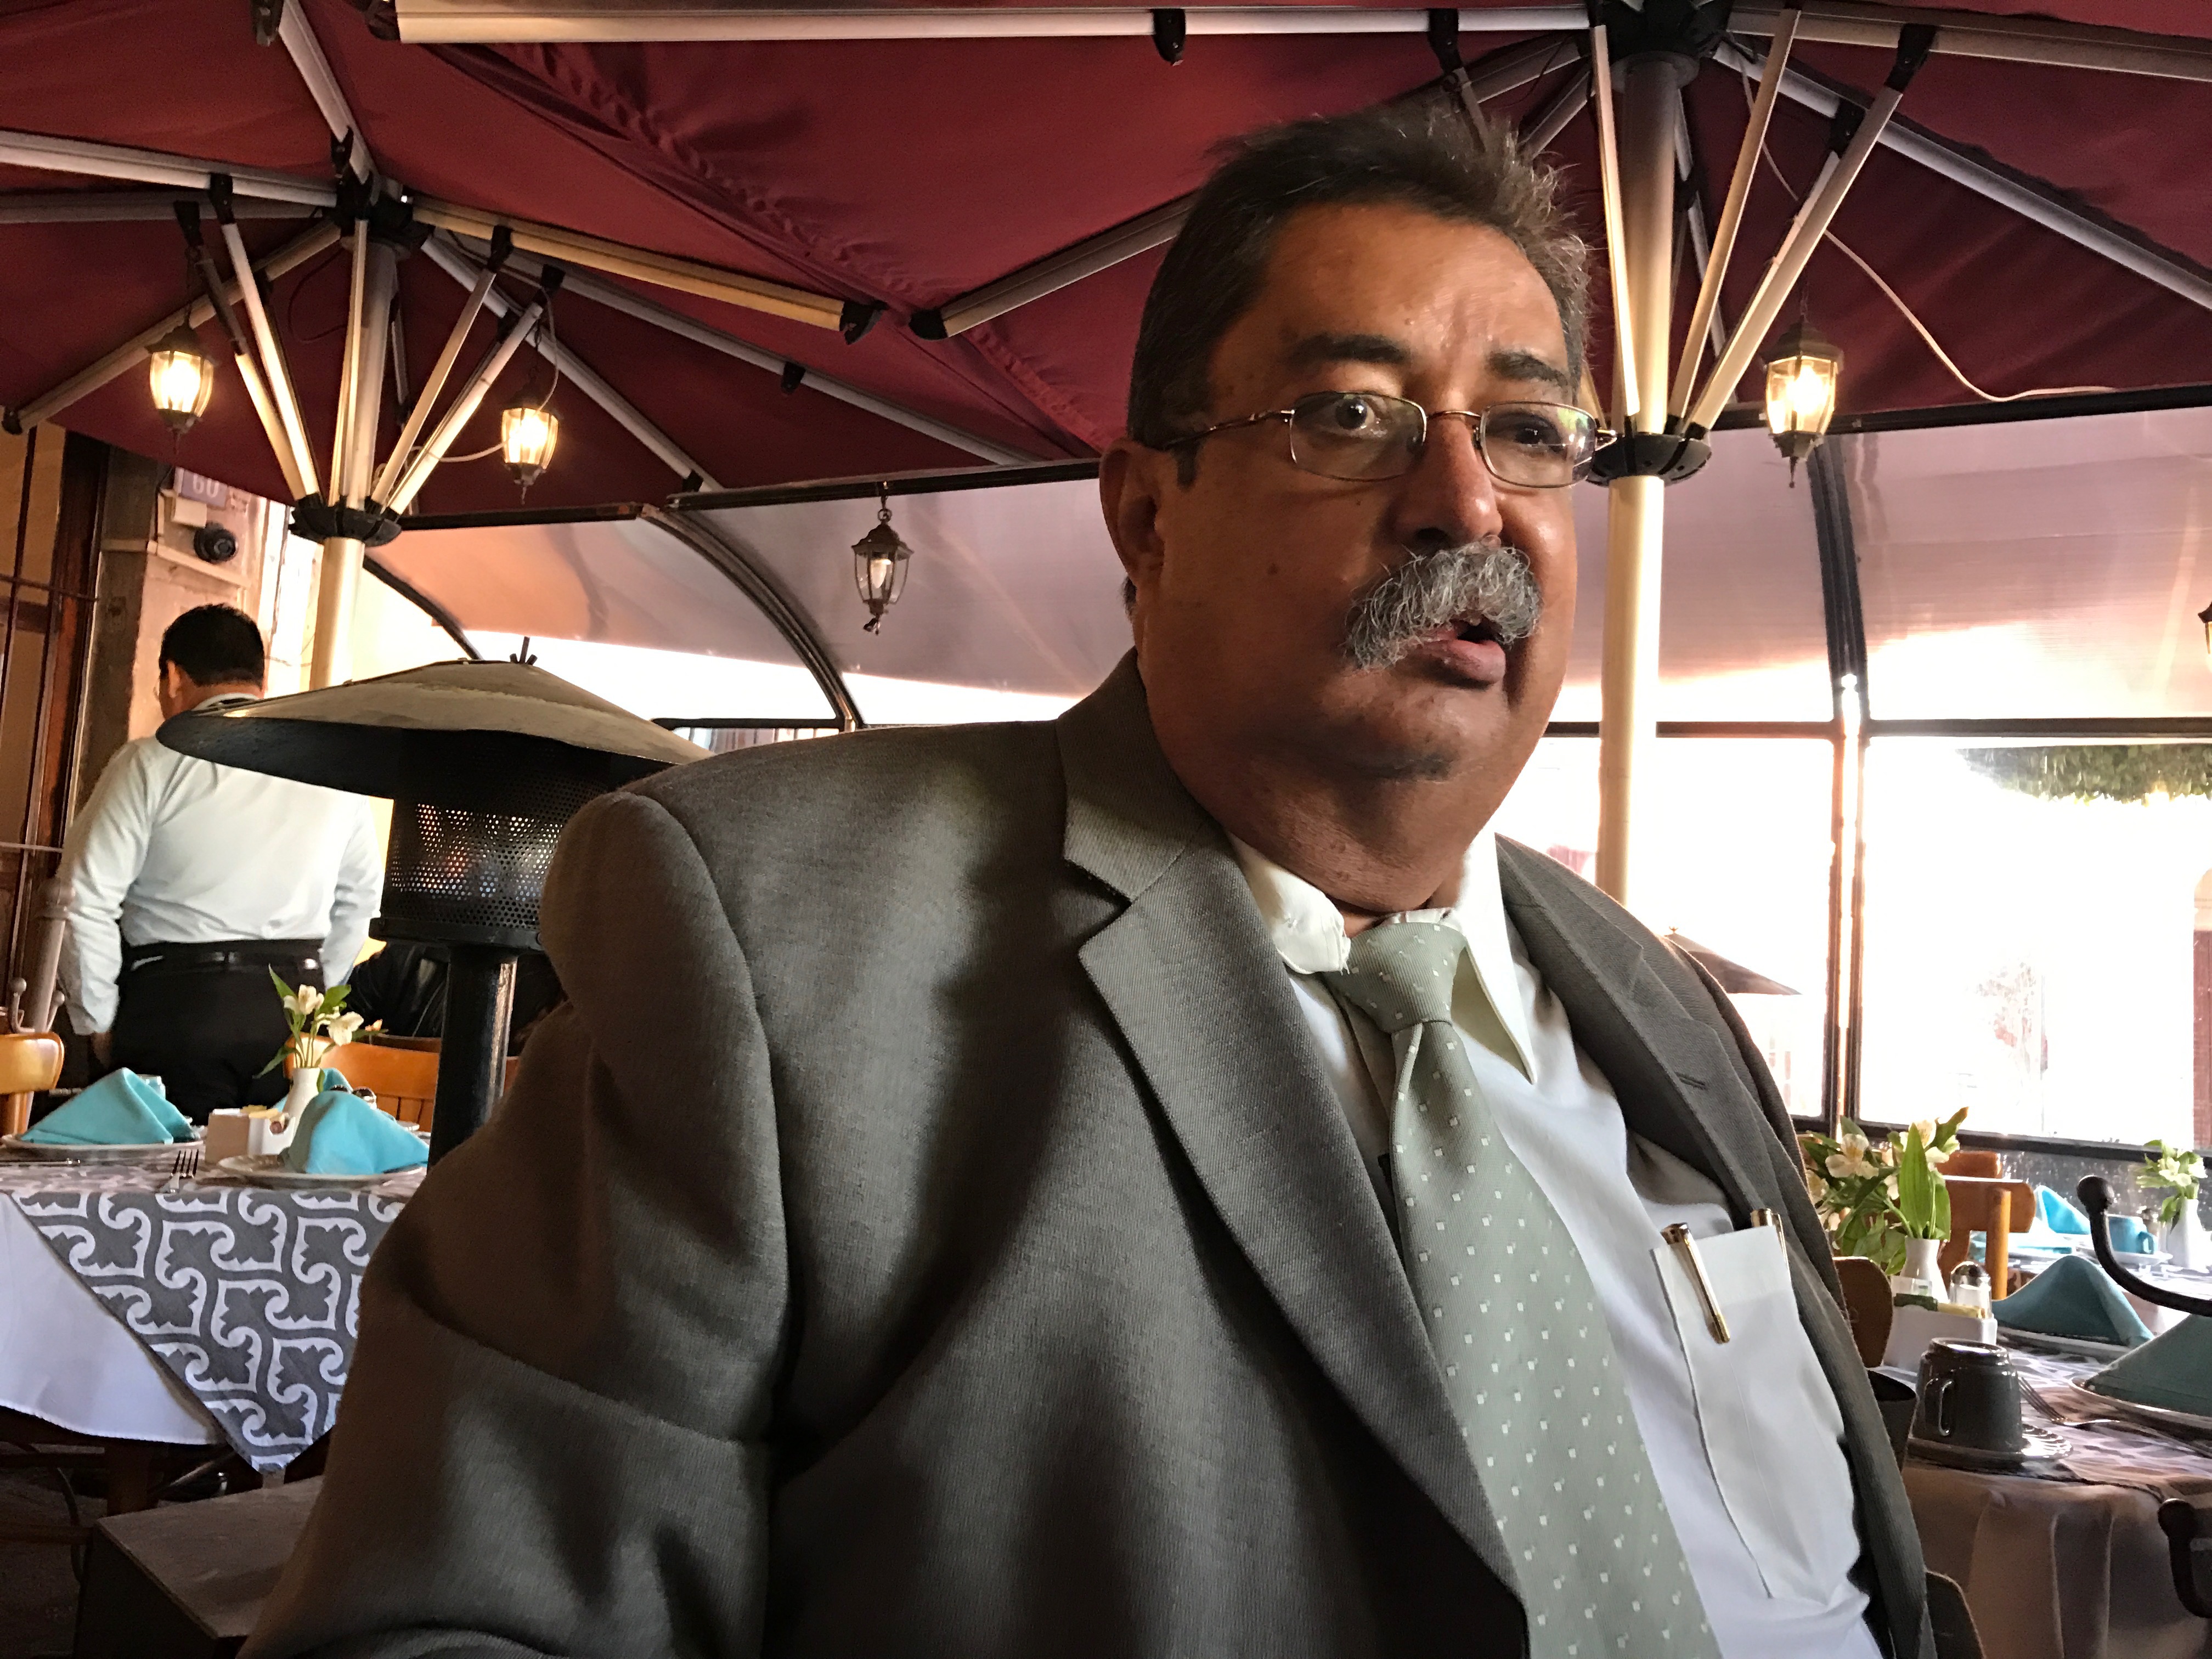  “No subiremos tarifas hasta que el gobernador Pancho Domínguez lo determine”: Taxis “El Pescador”